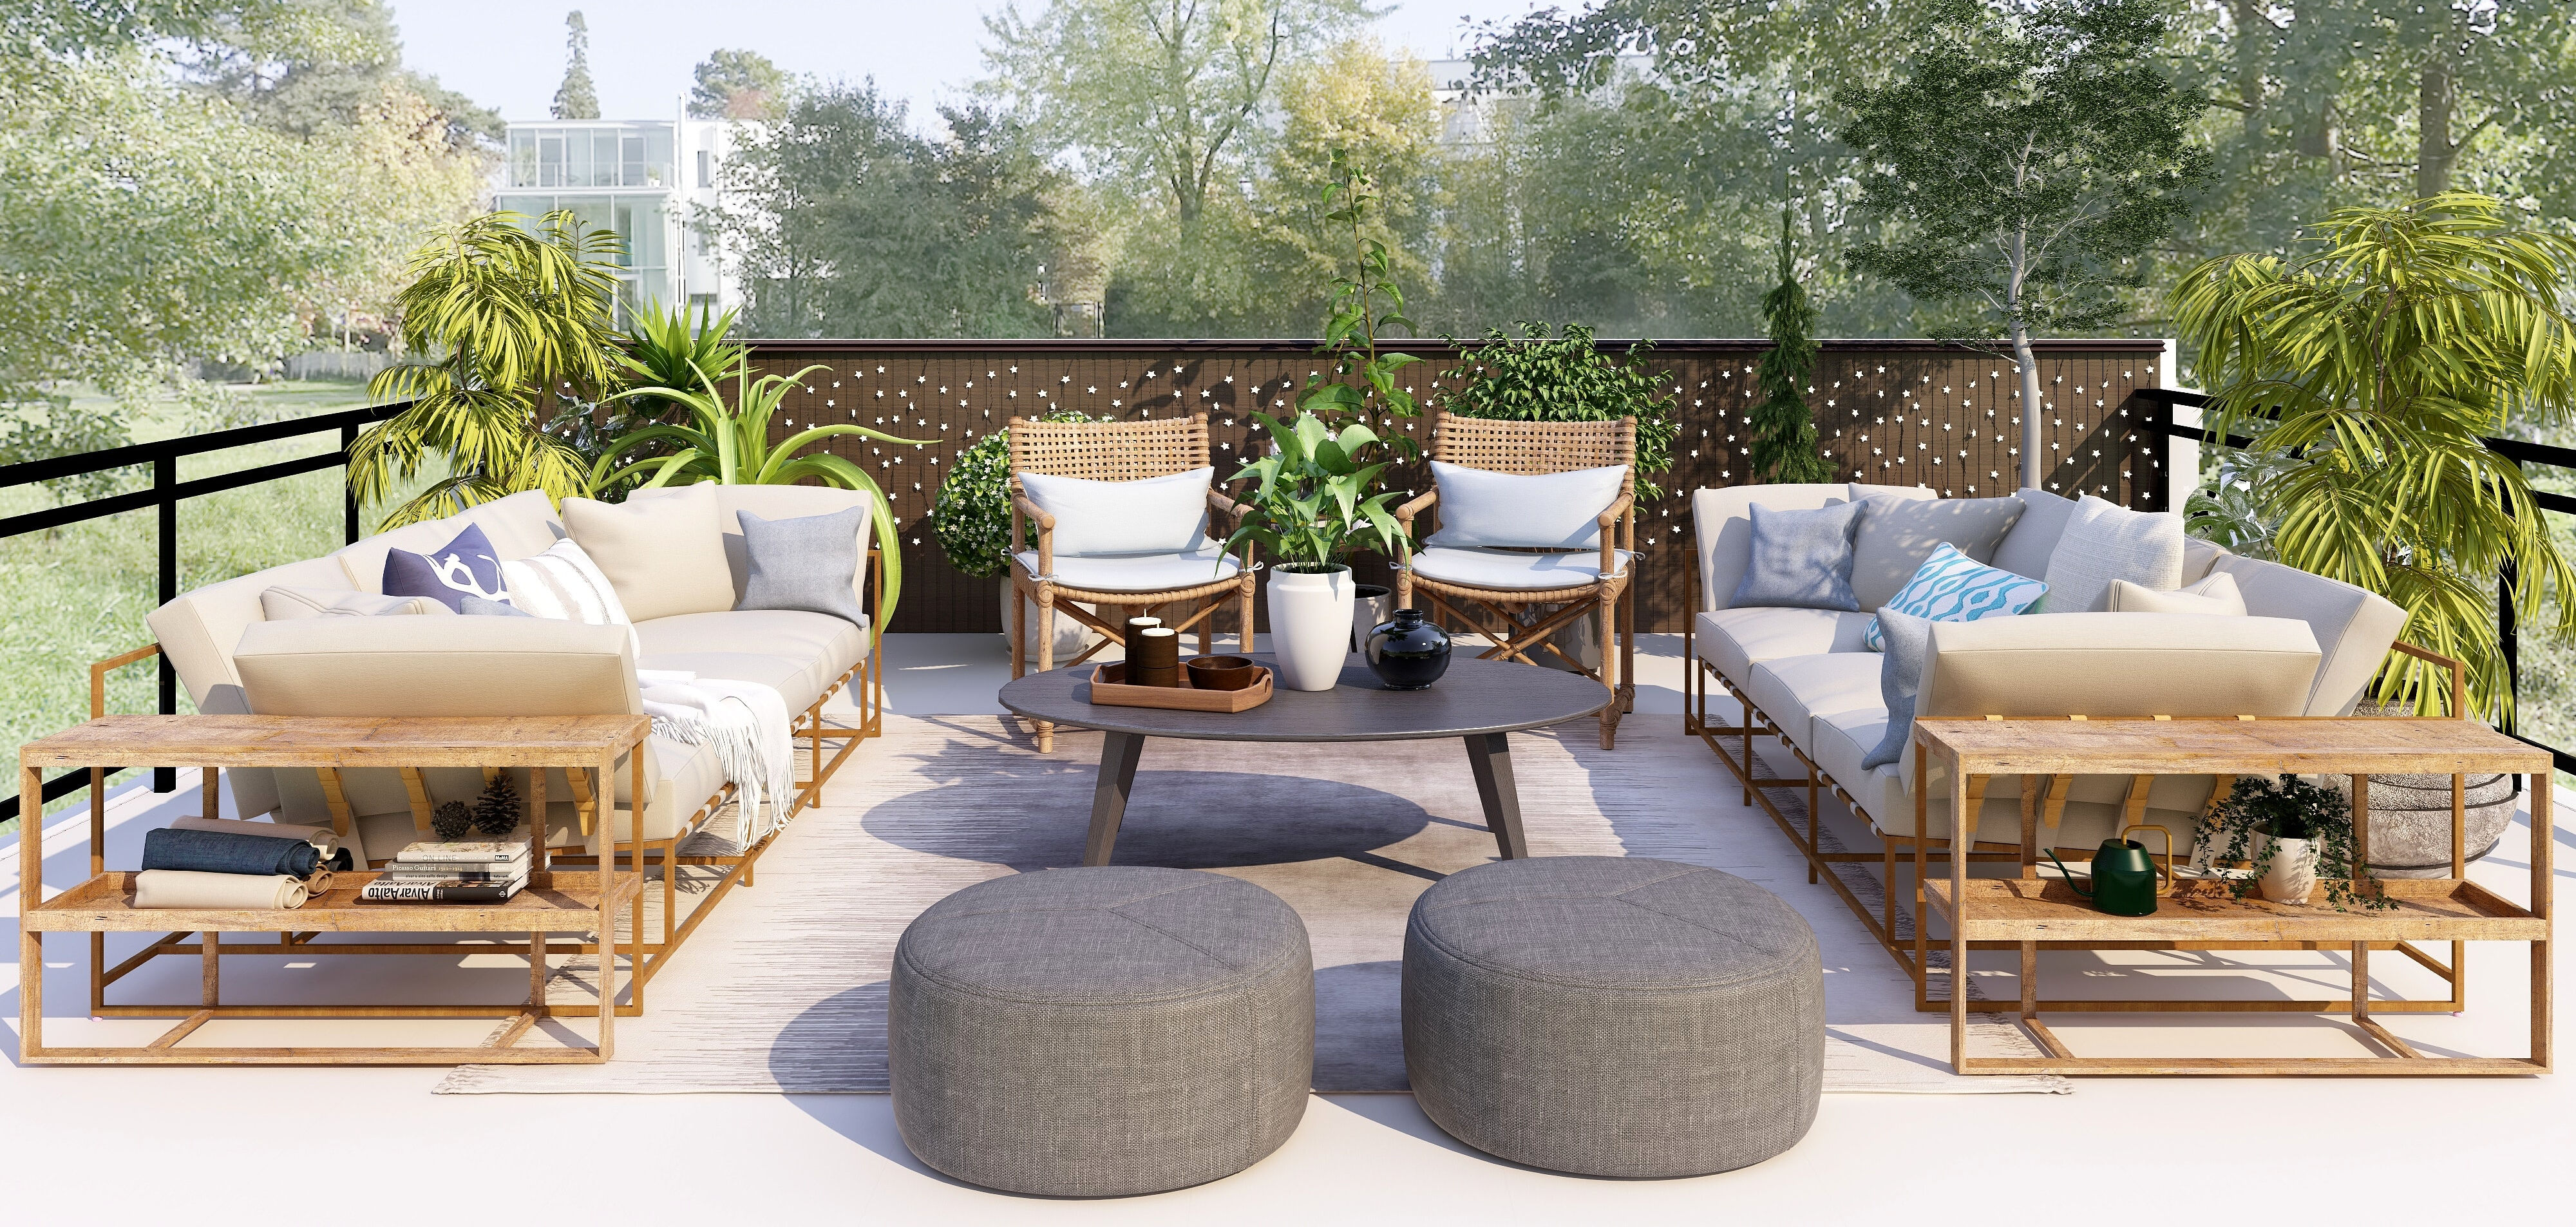 Heerlijk vertoeven op je balkon of in je achtertuin: dé tuintrends van 2021